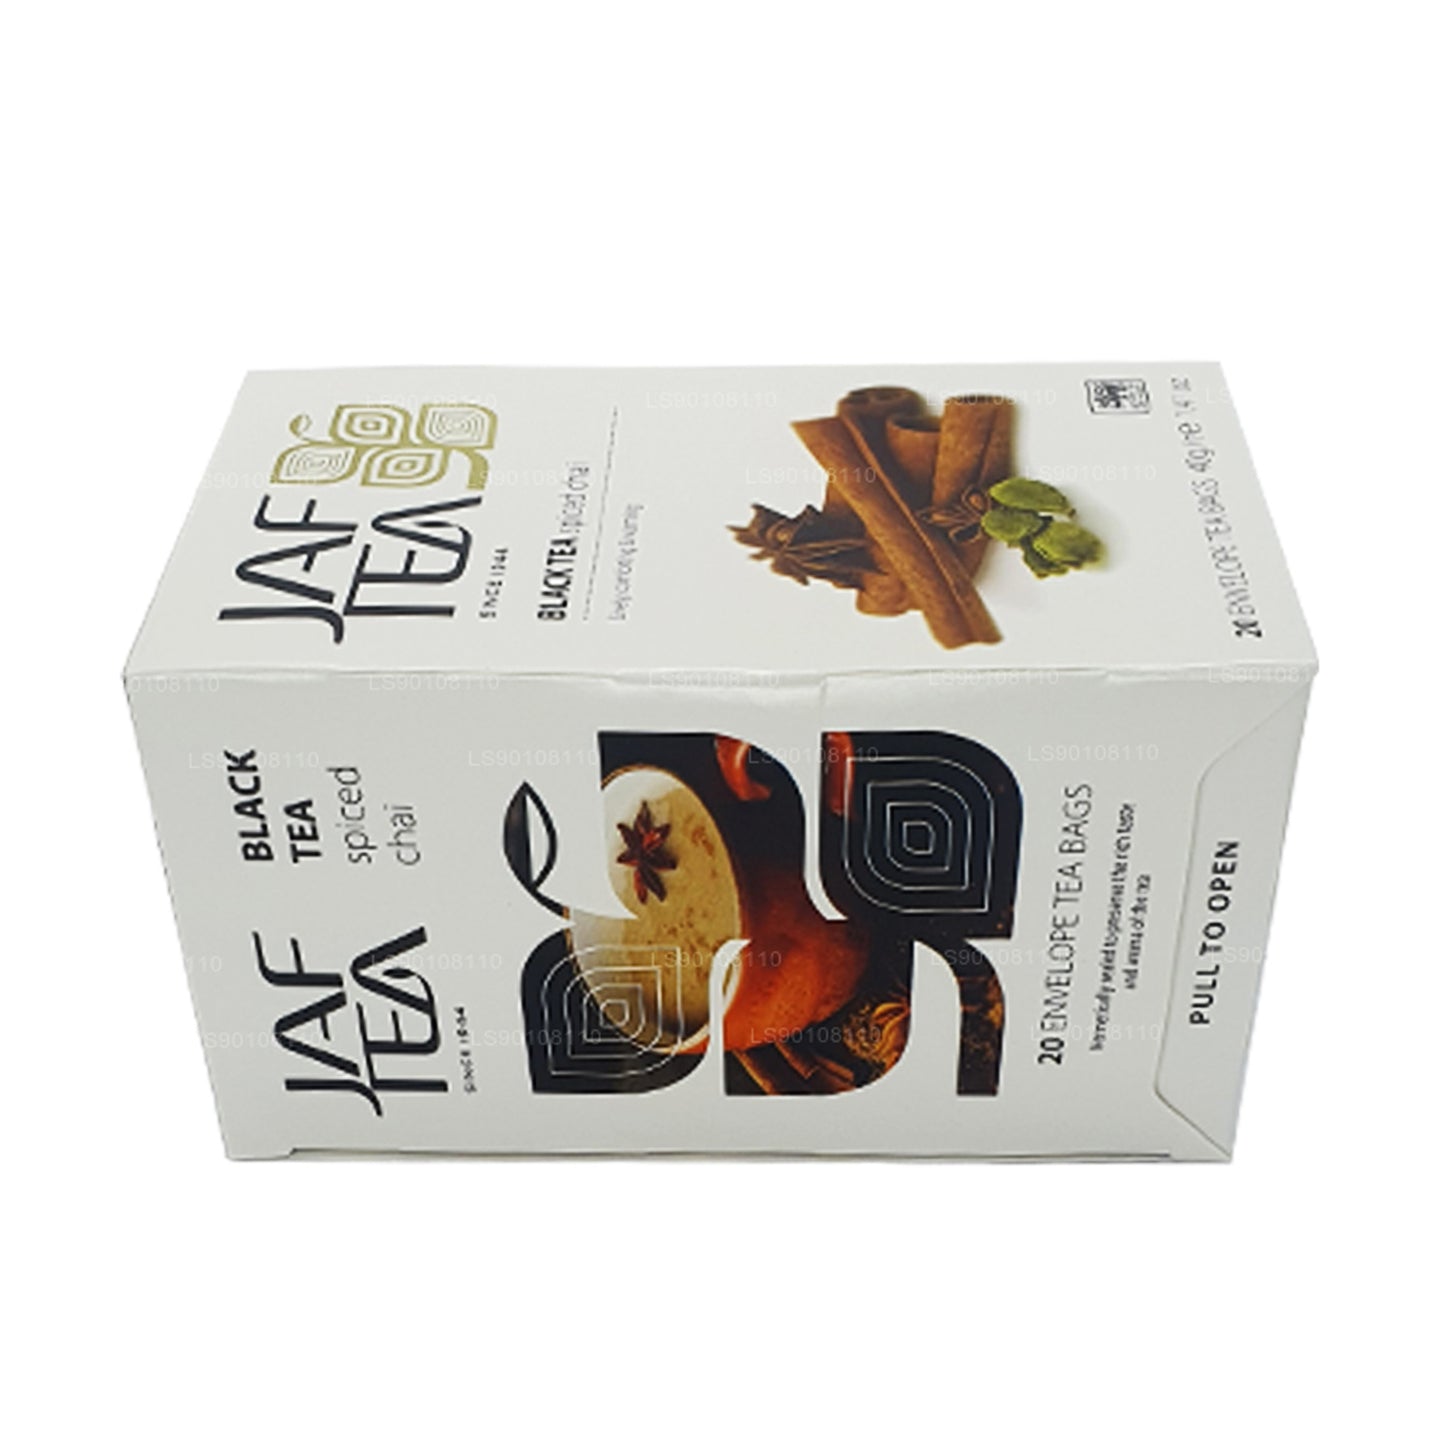 Чай Jaf Tea Pure Spice Collection Черный чай Чай со специями (40 г) 20 пакетиков